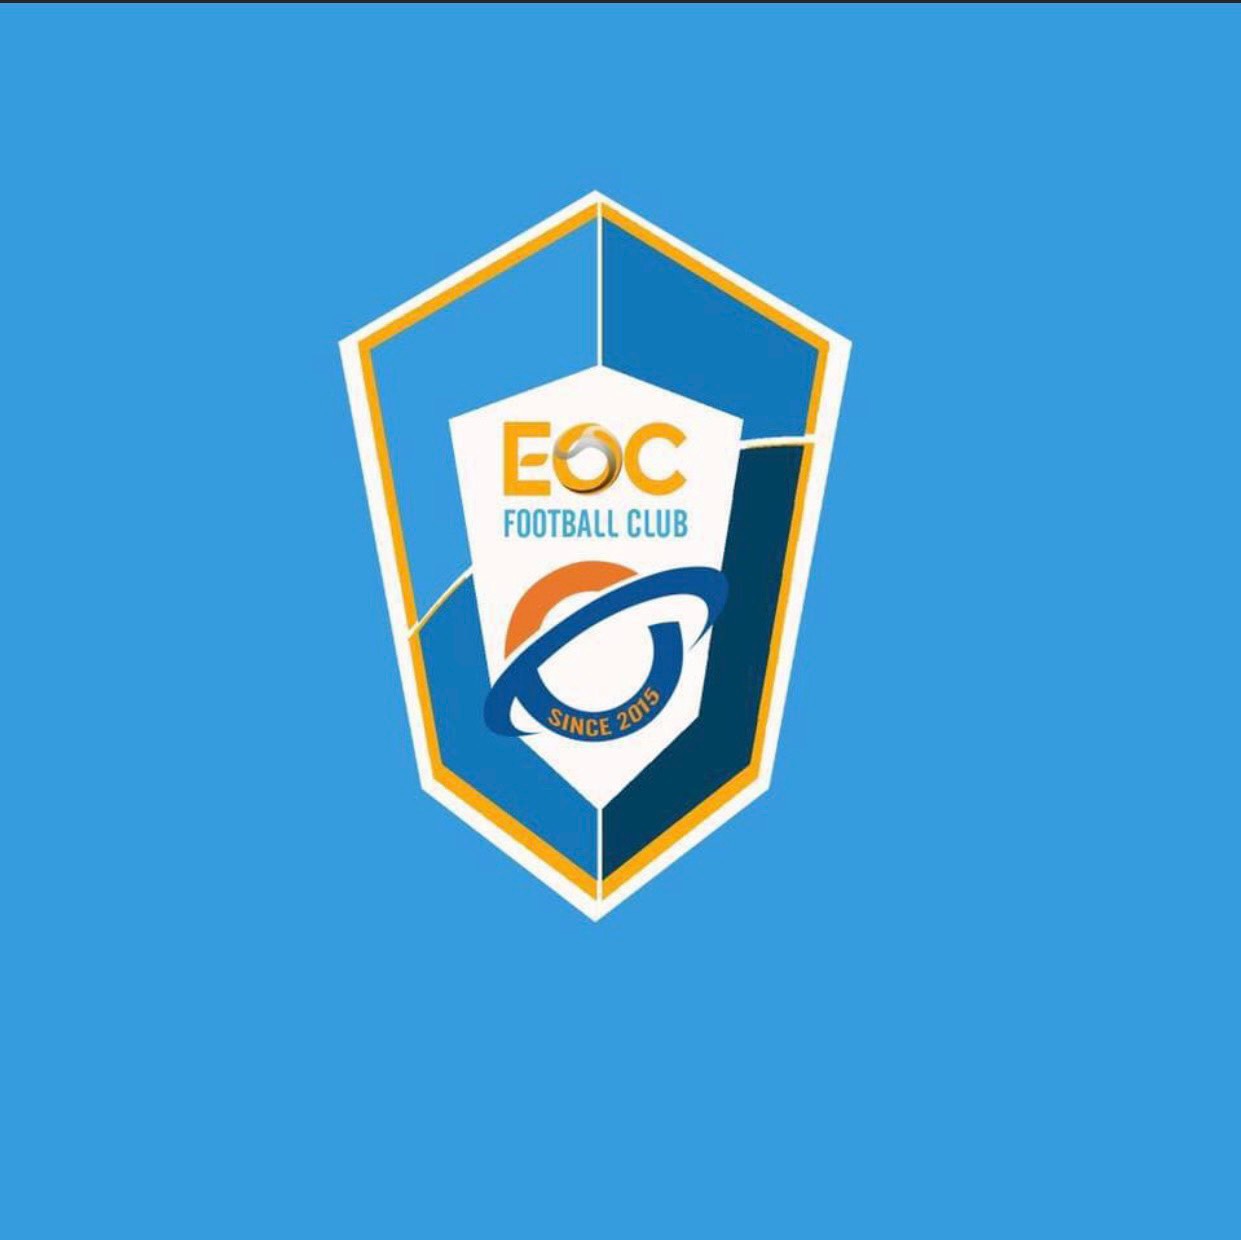 FC EOC